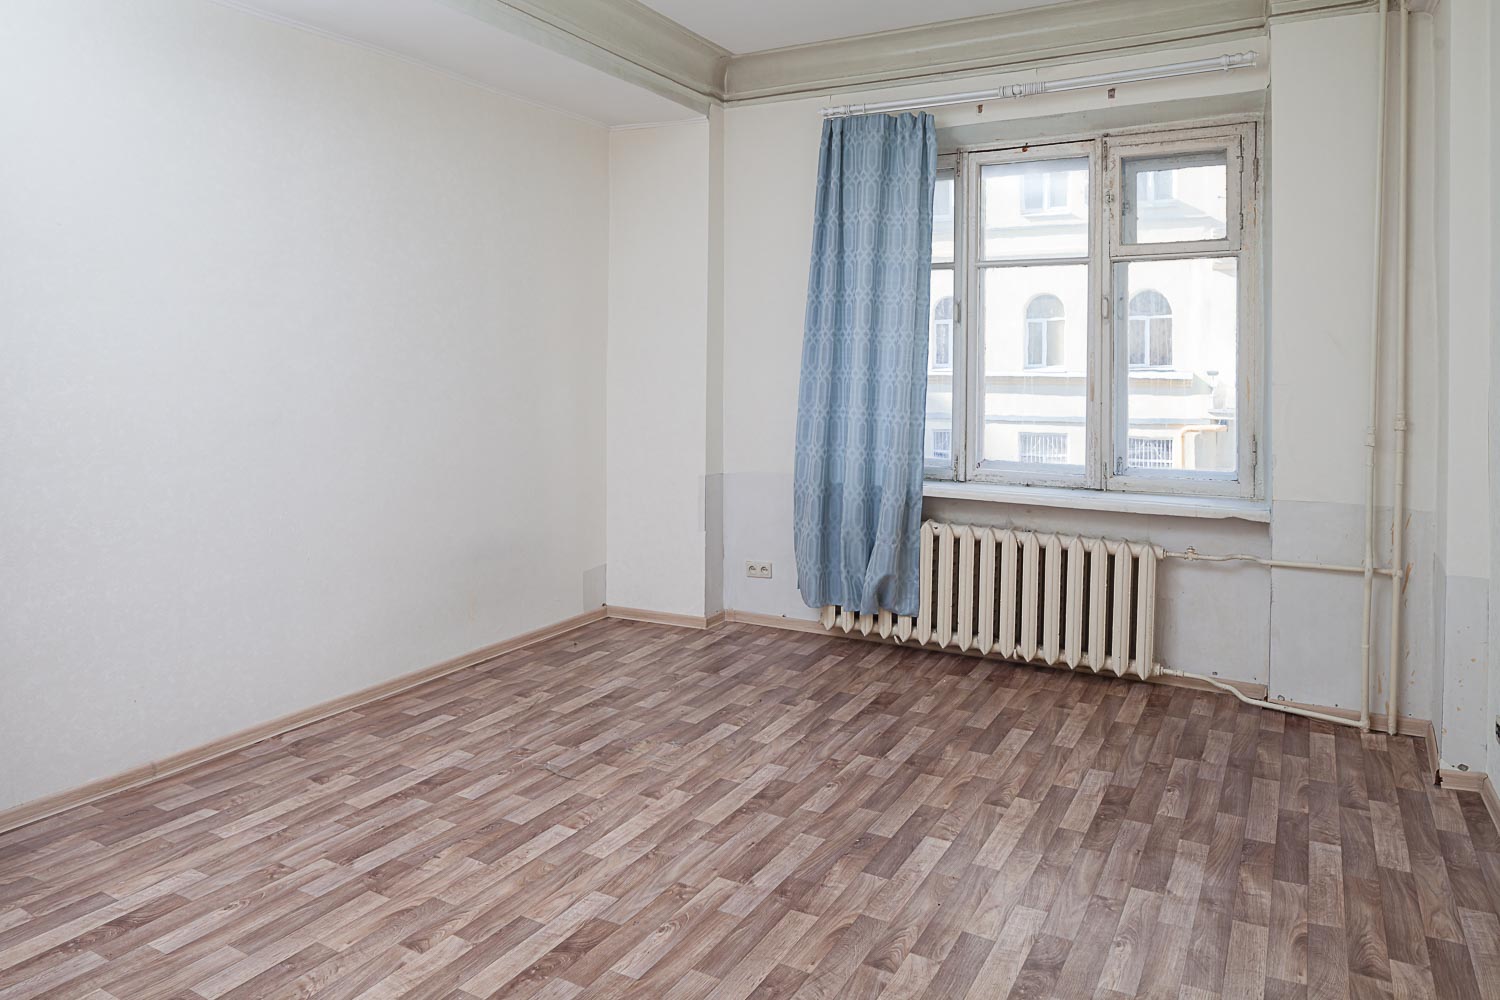 Продам квартиру в Москве по адресу Капельский переулок, 13, площадь 80 квм Недвижимость Москва (Россия) Продается четырехкомнатная квартира с четырьмя изолированными комнатами и просторным холлом